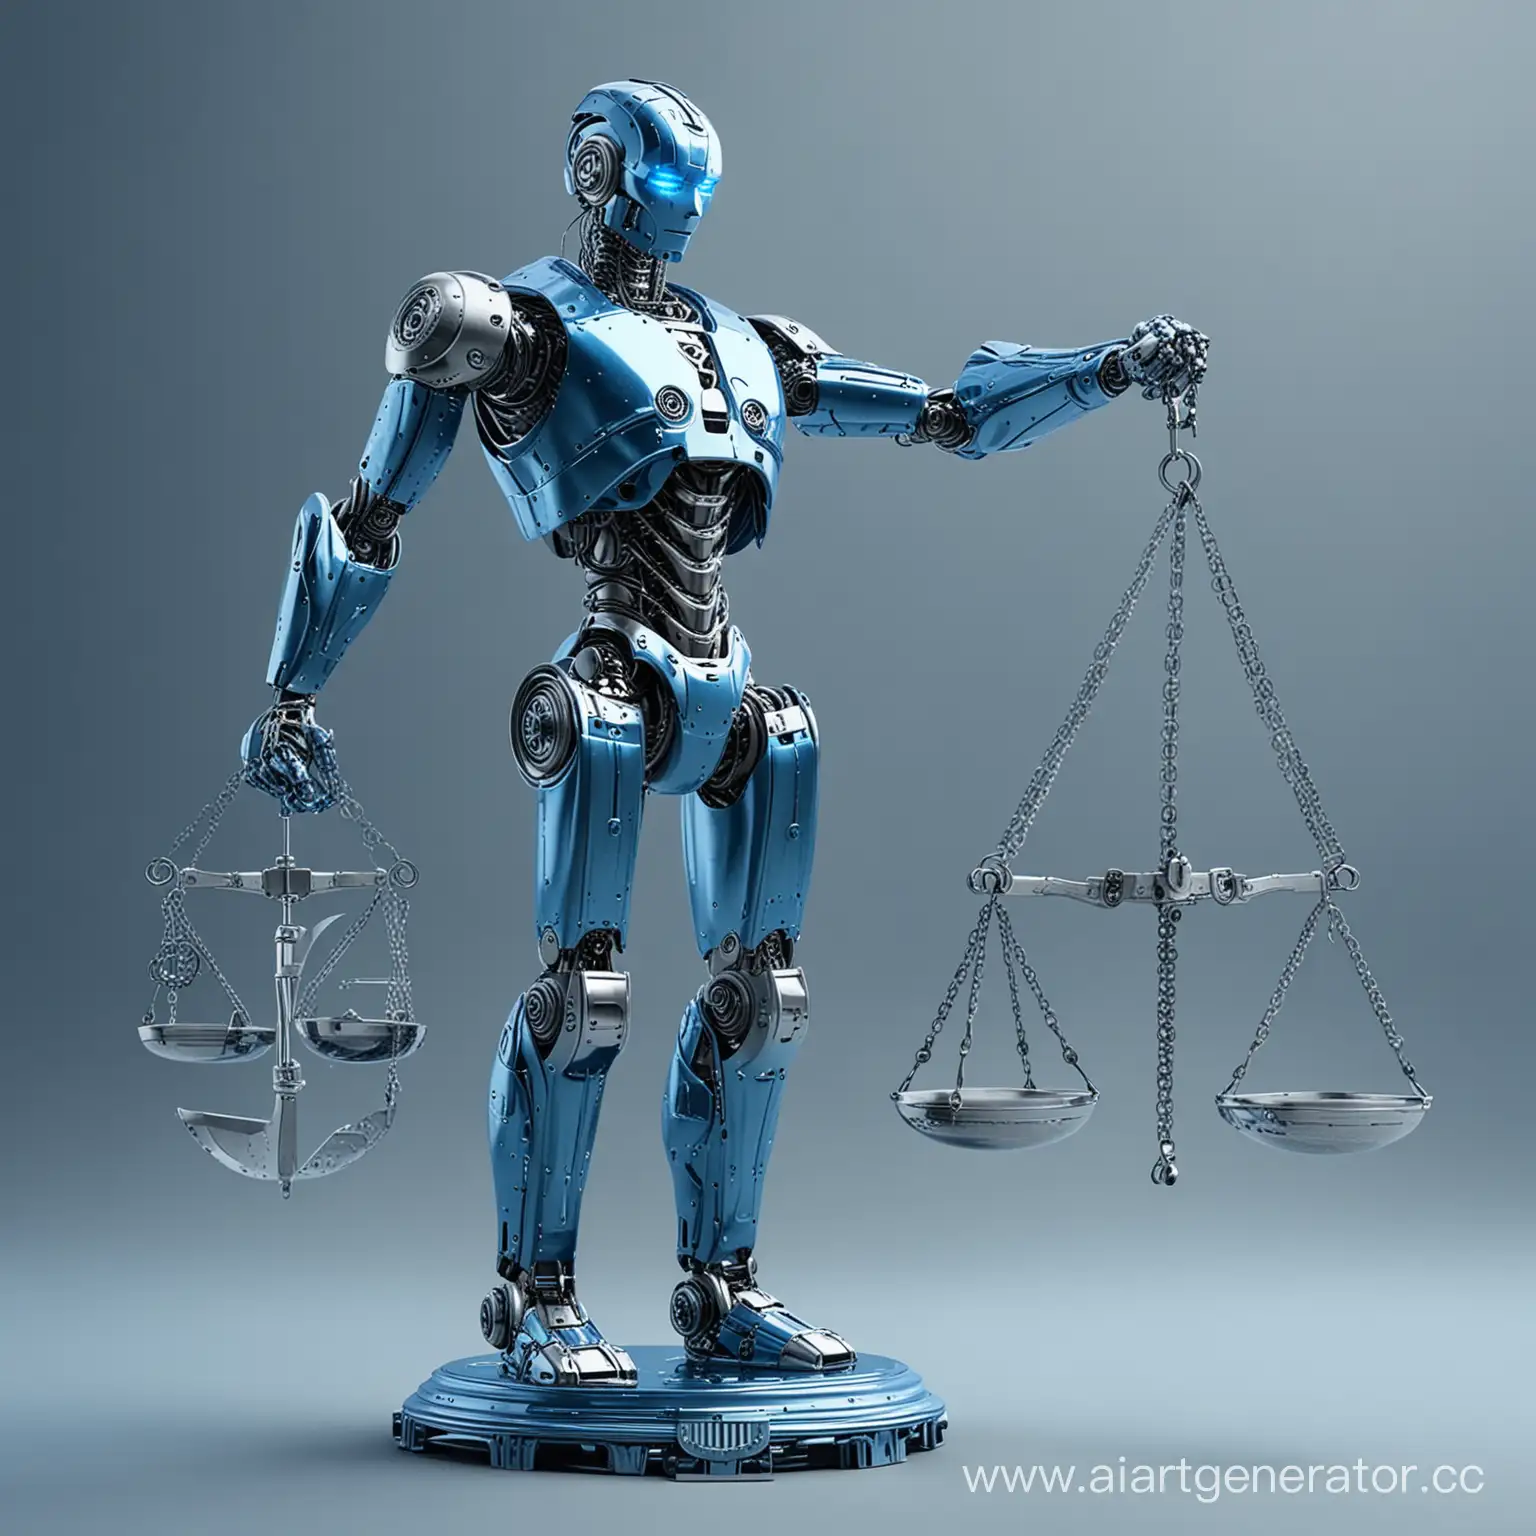 сгенерируй металлического робота, олицетворяющего искусственный интеллект, который смотрит в даль и держит весы справедливости, все с голубых оттенках